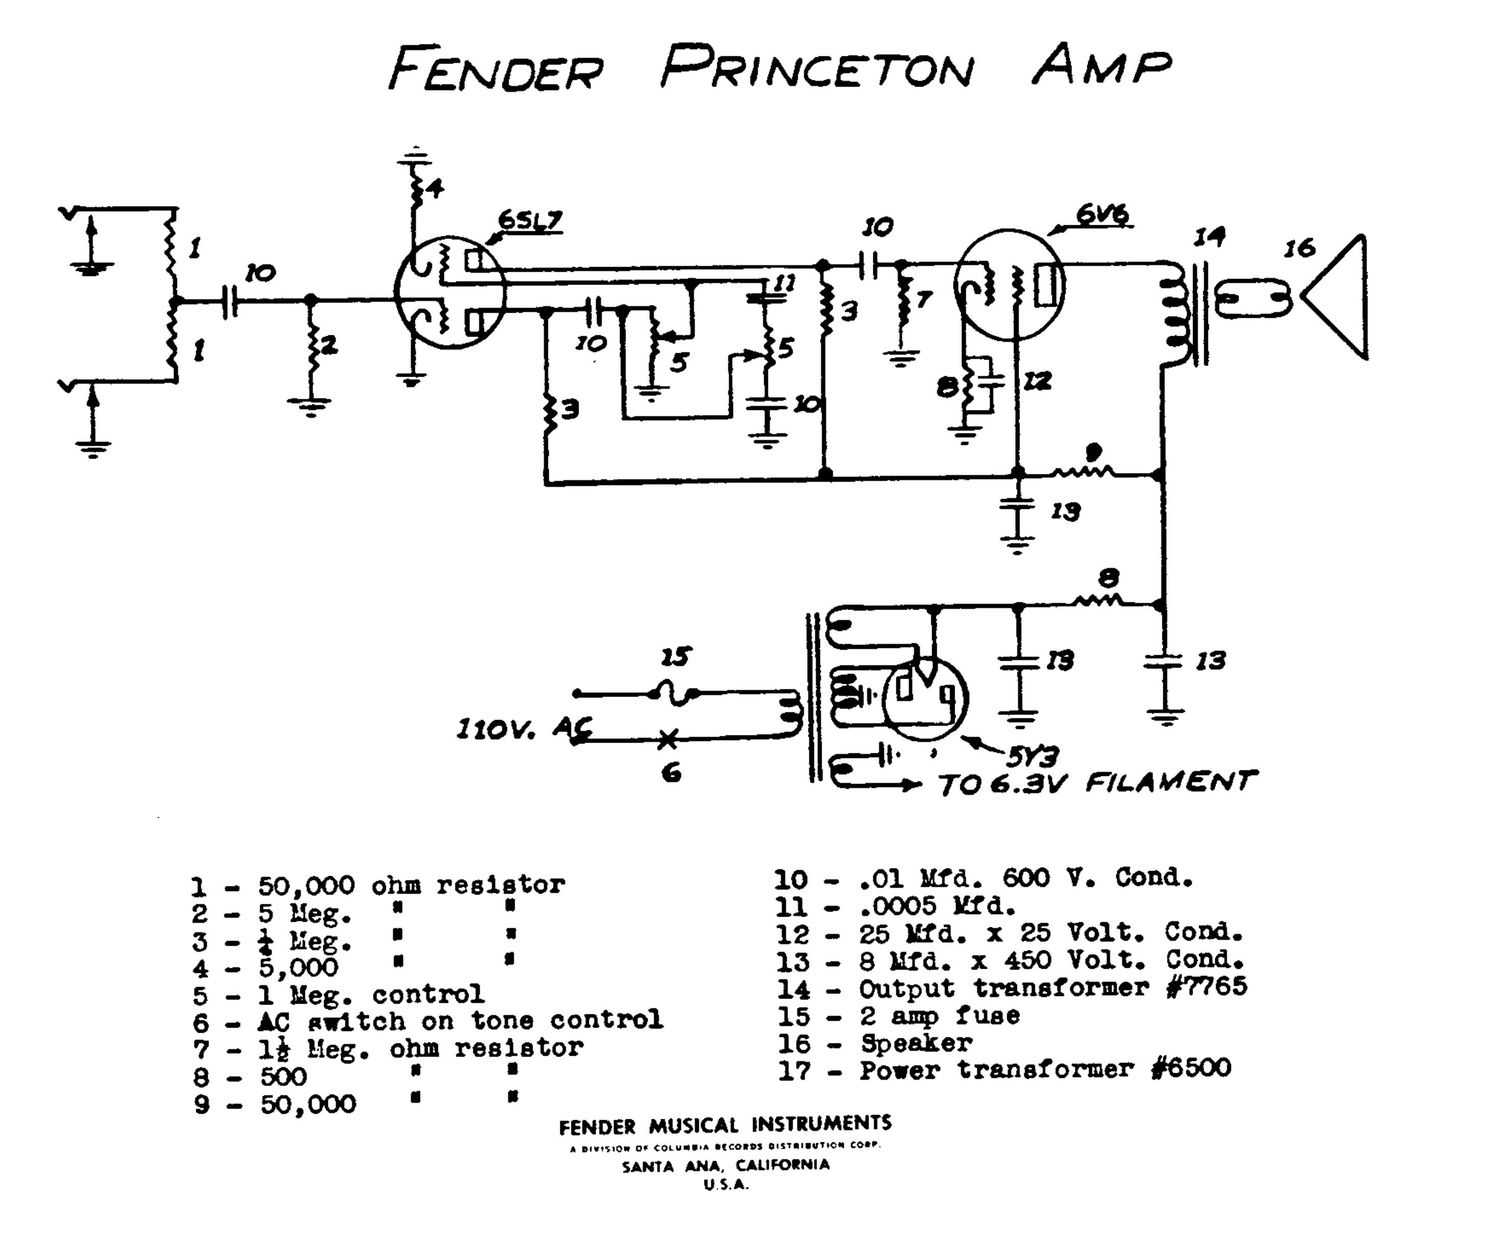 fender-princeton-5b2-schematic-1.jpg